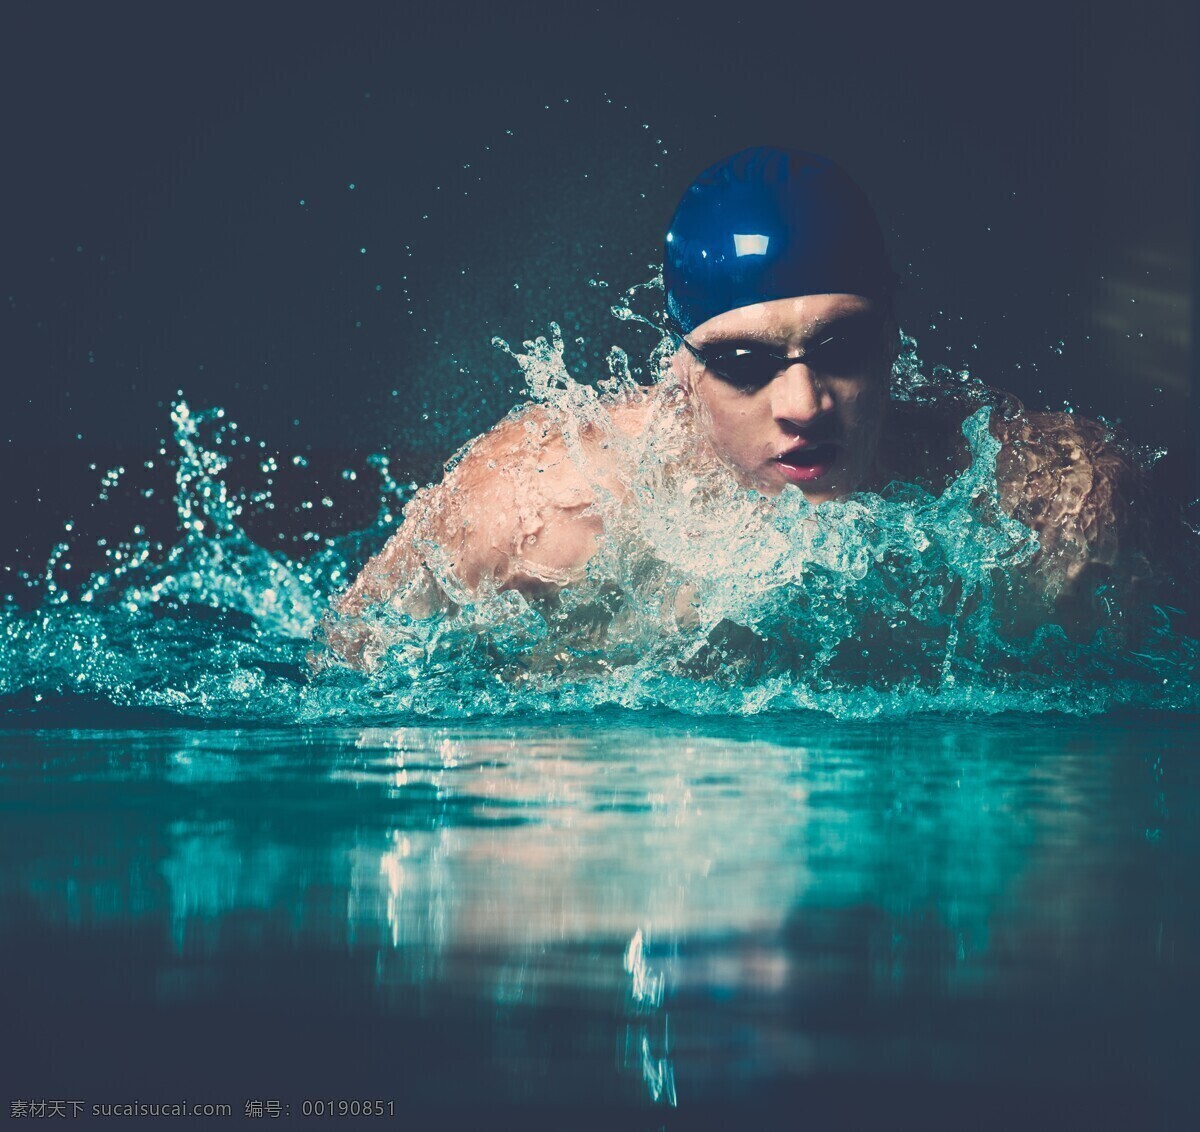 水中 游泳 运动员 男人 水花 水纹 体育 运动 健身 体育运动 生活百科